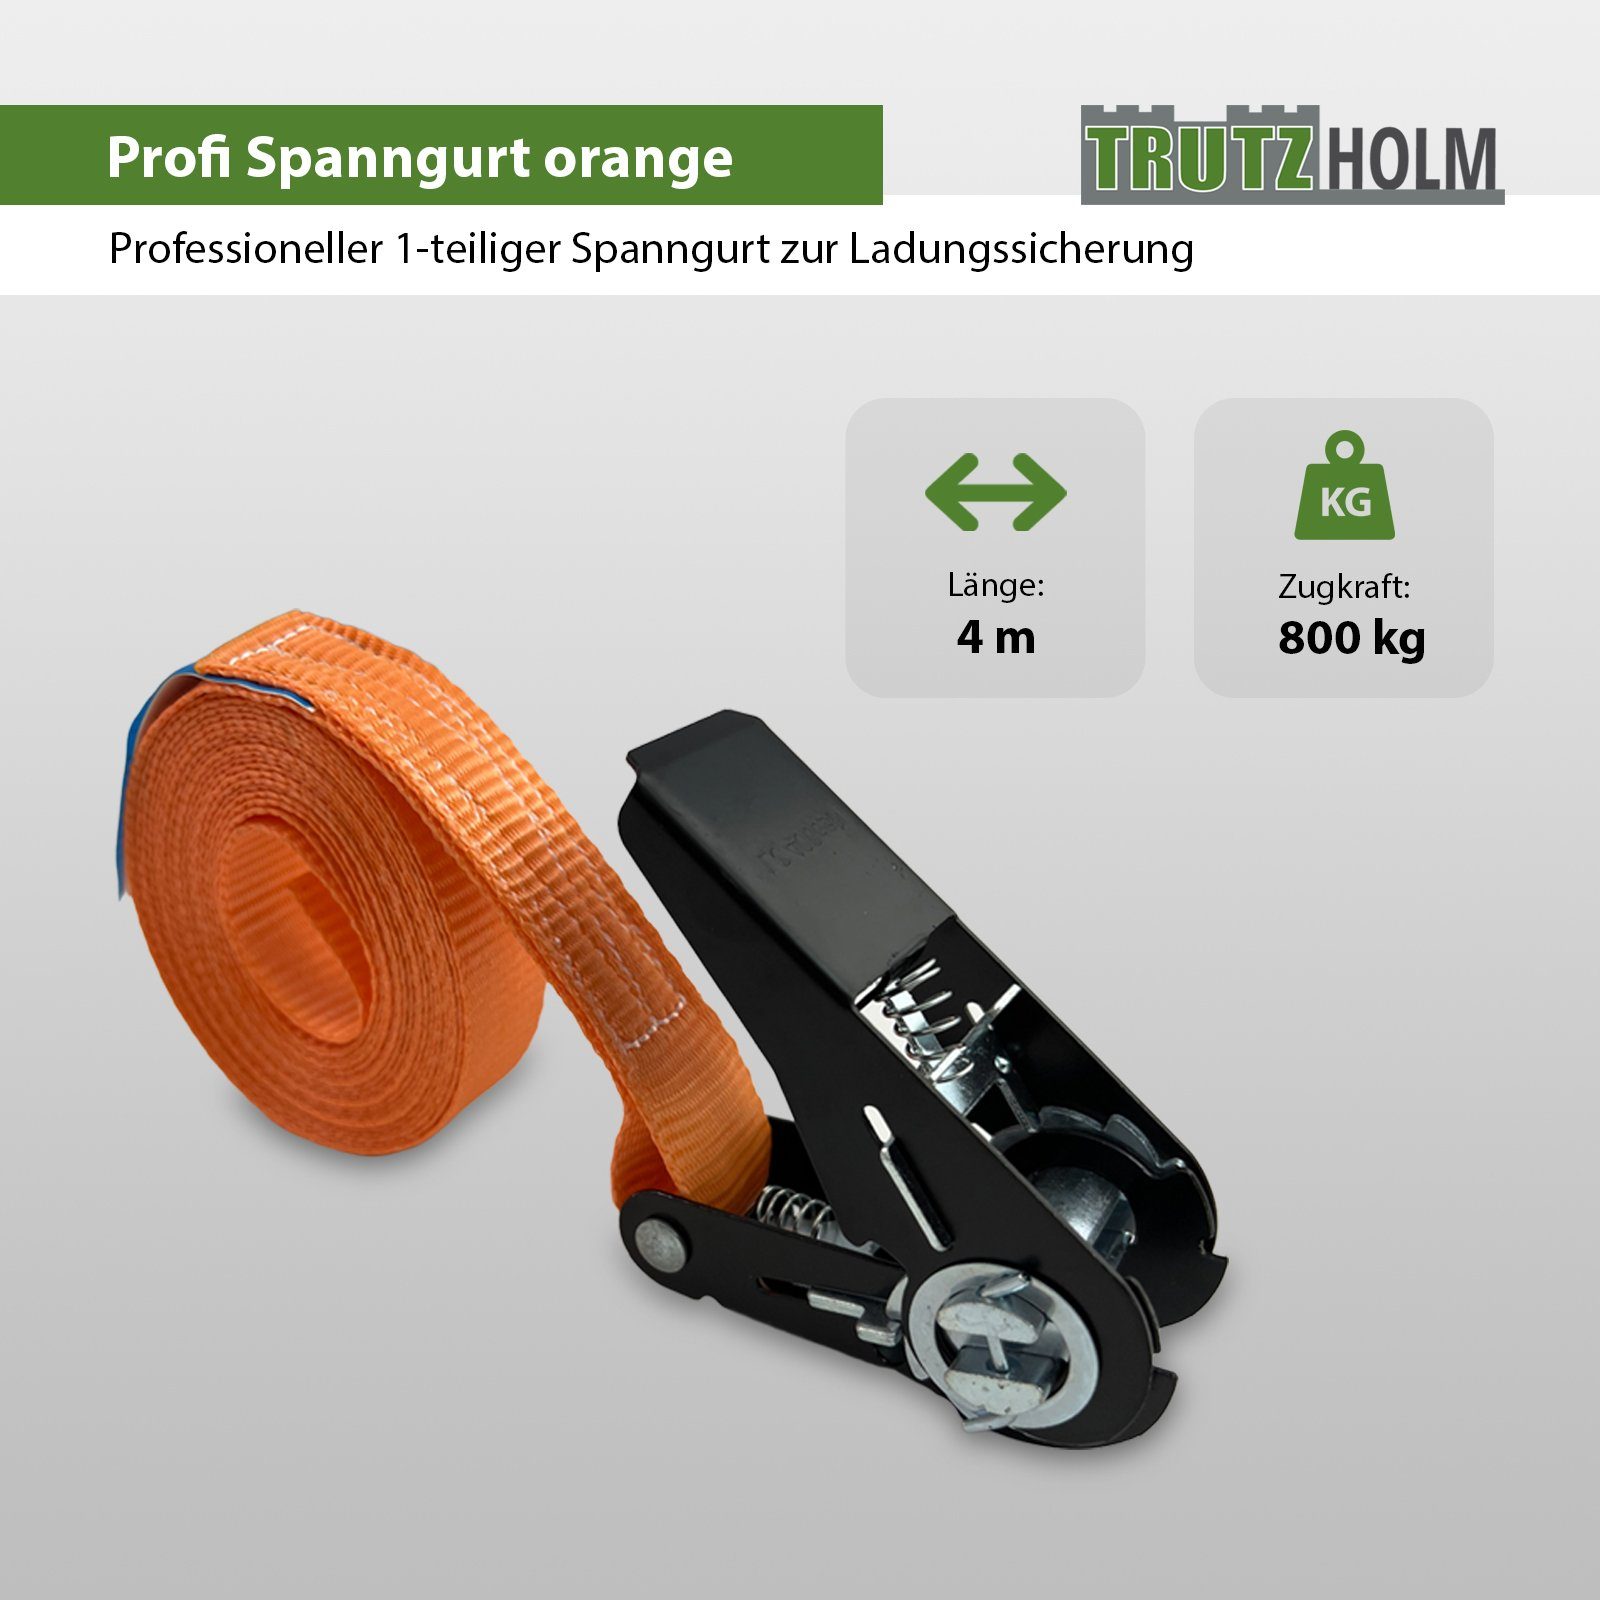 TRUTZHOLM Spanngurt 5x Schwarzes 800kg 1-tlg Spanngurt 4m (Set) Orange Spanngurte Ratschen 0,8t